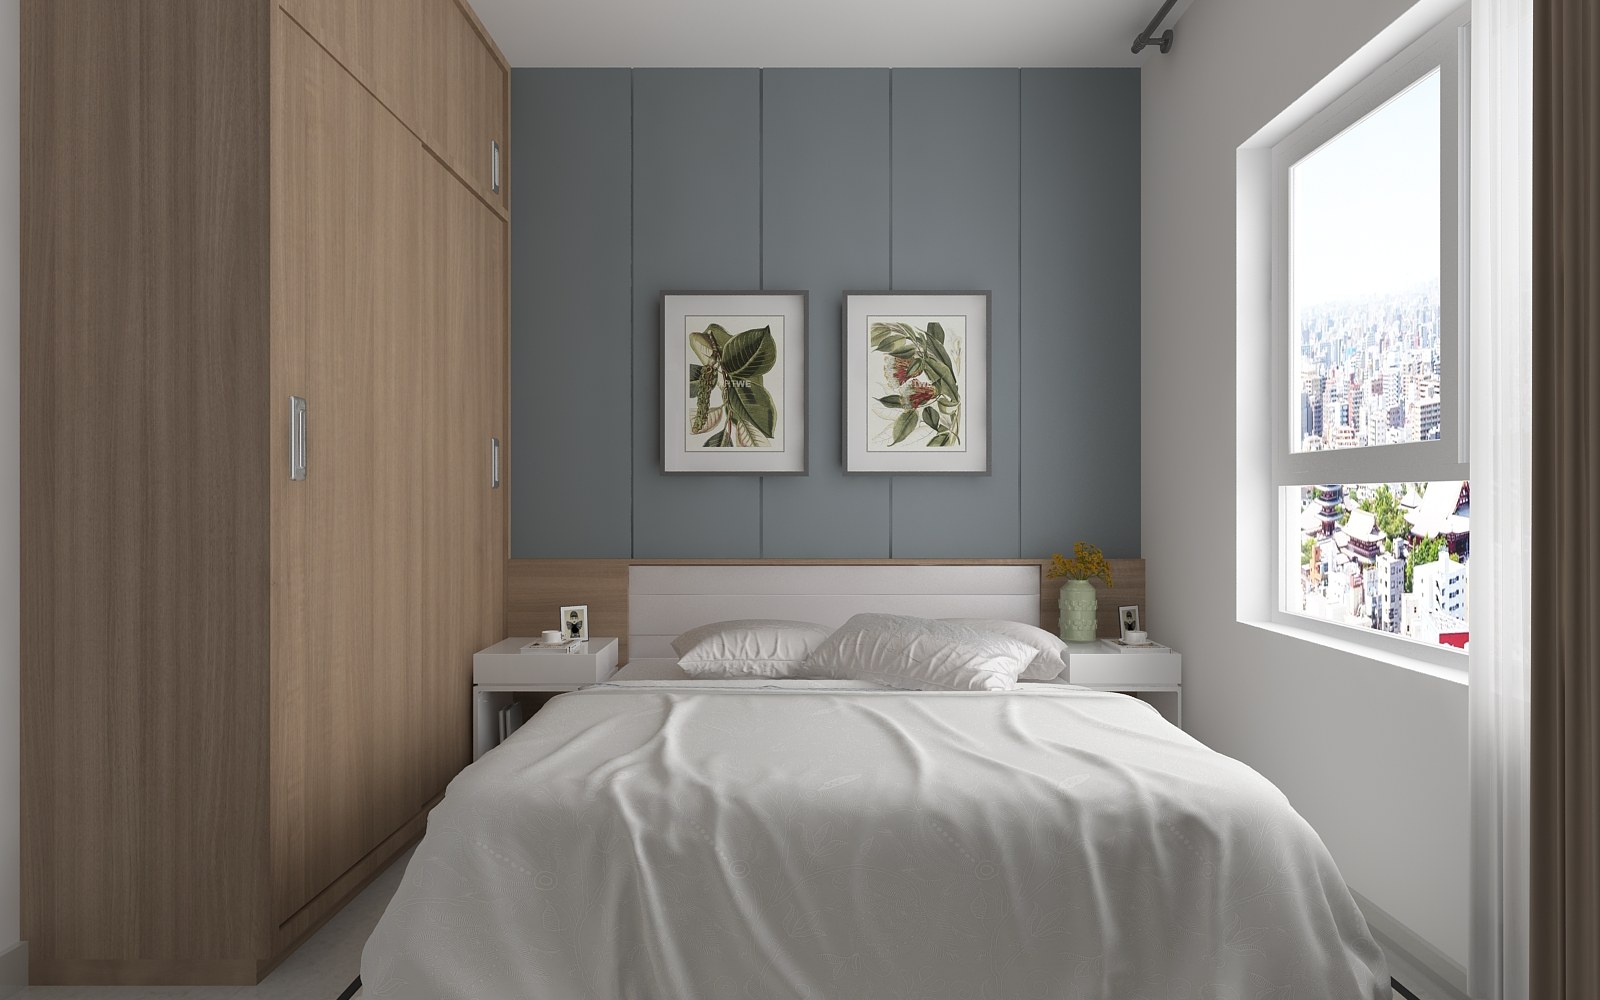 Thiết kế nội thất căn hộ chung cư 2 phòng ngủ. Các gam màu trắng, xanh xám và nội thất gỗ kết hợp khéo léo tạo cảm giác thoải mái và ấm áp nhất cho chủ nhân căn phòng.